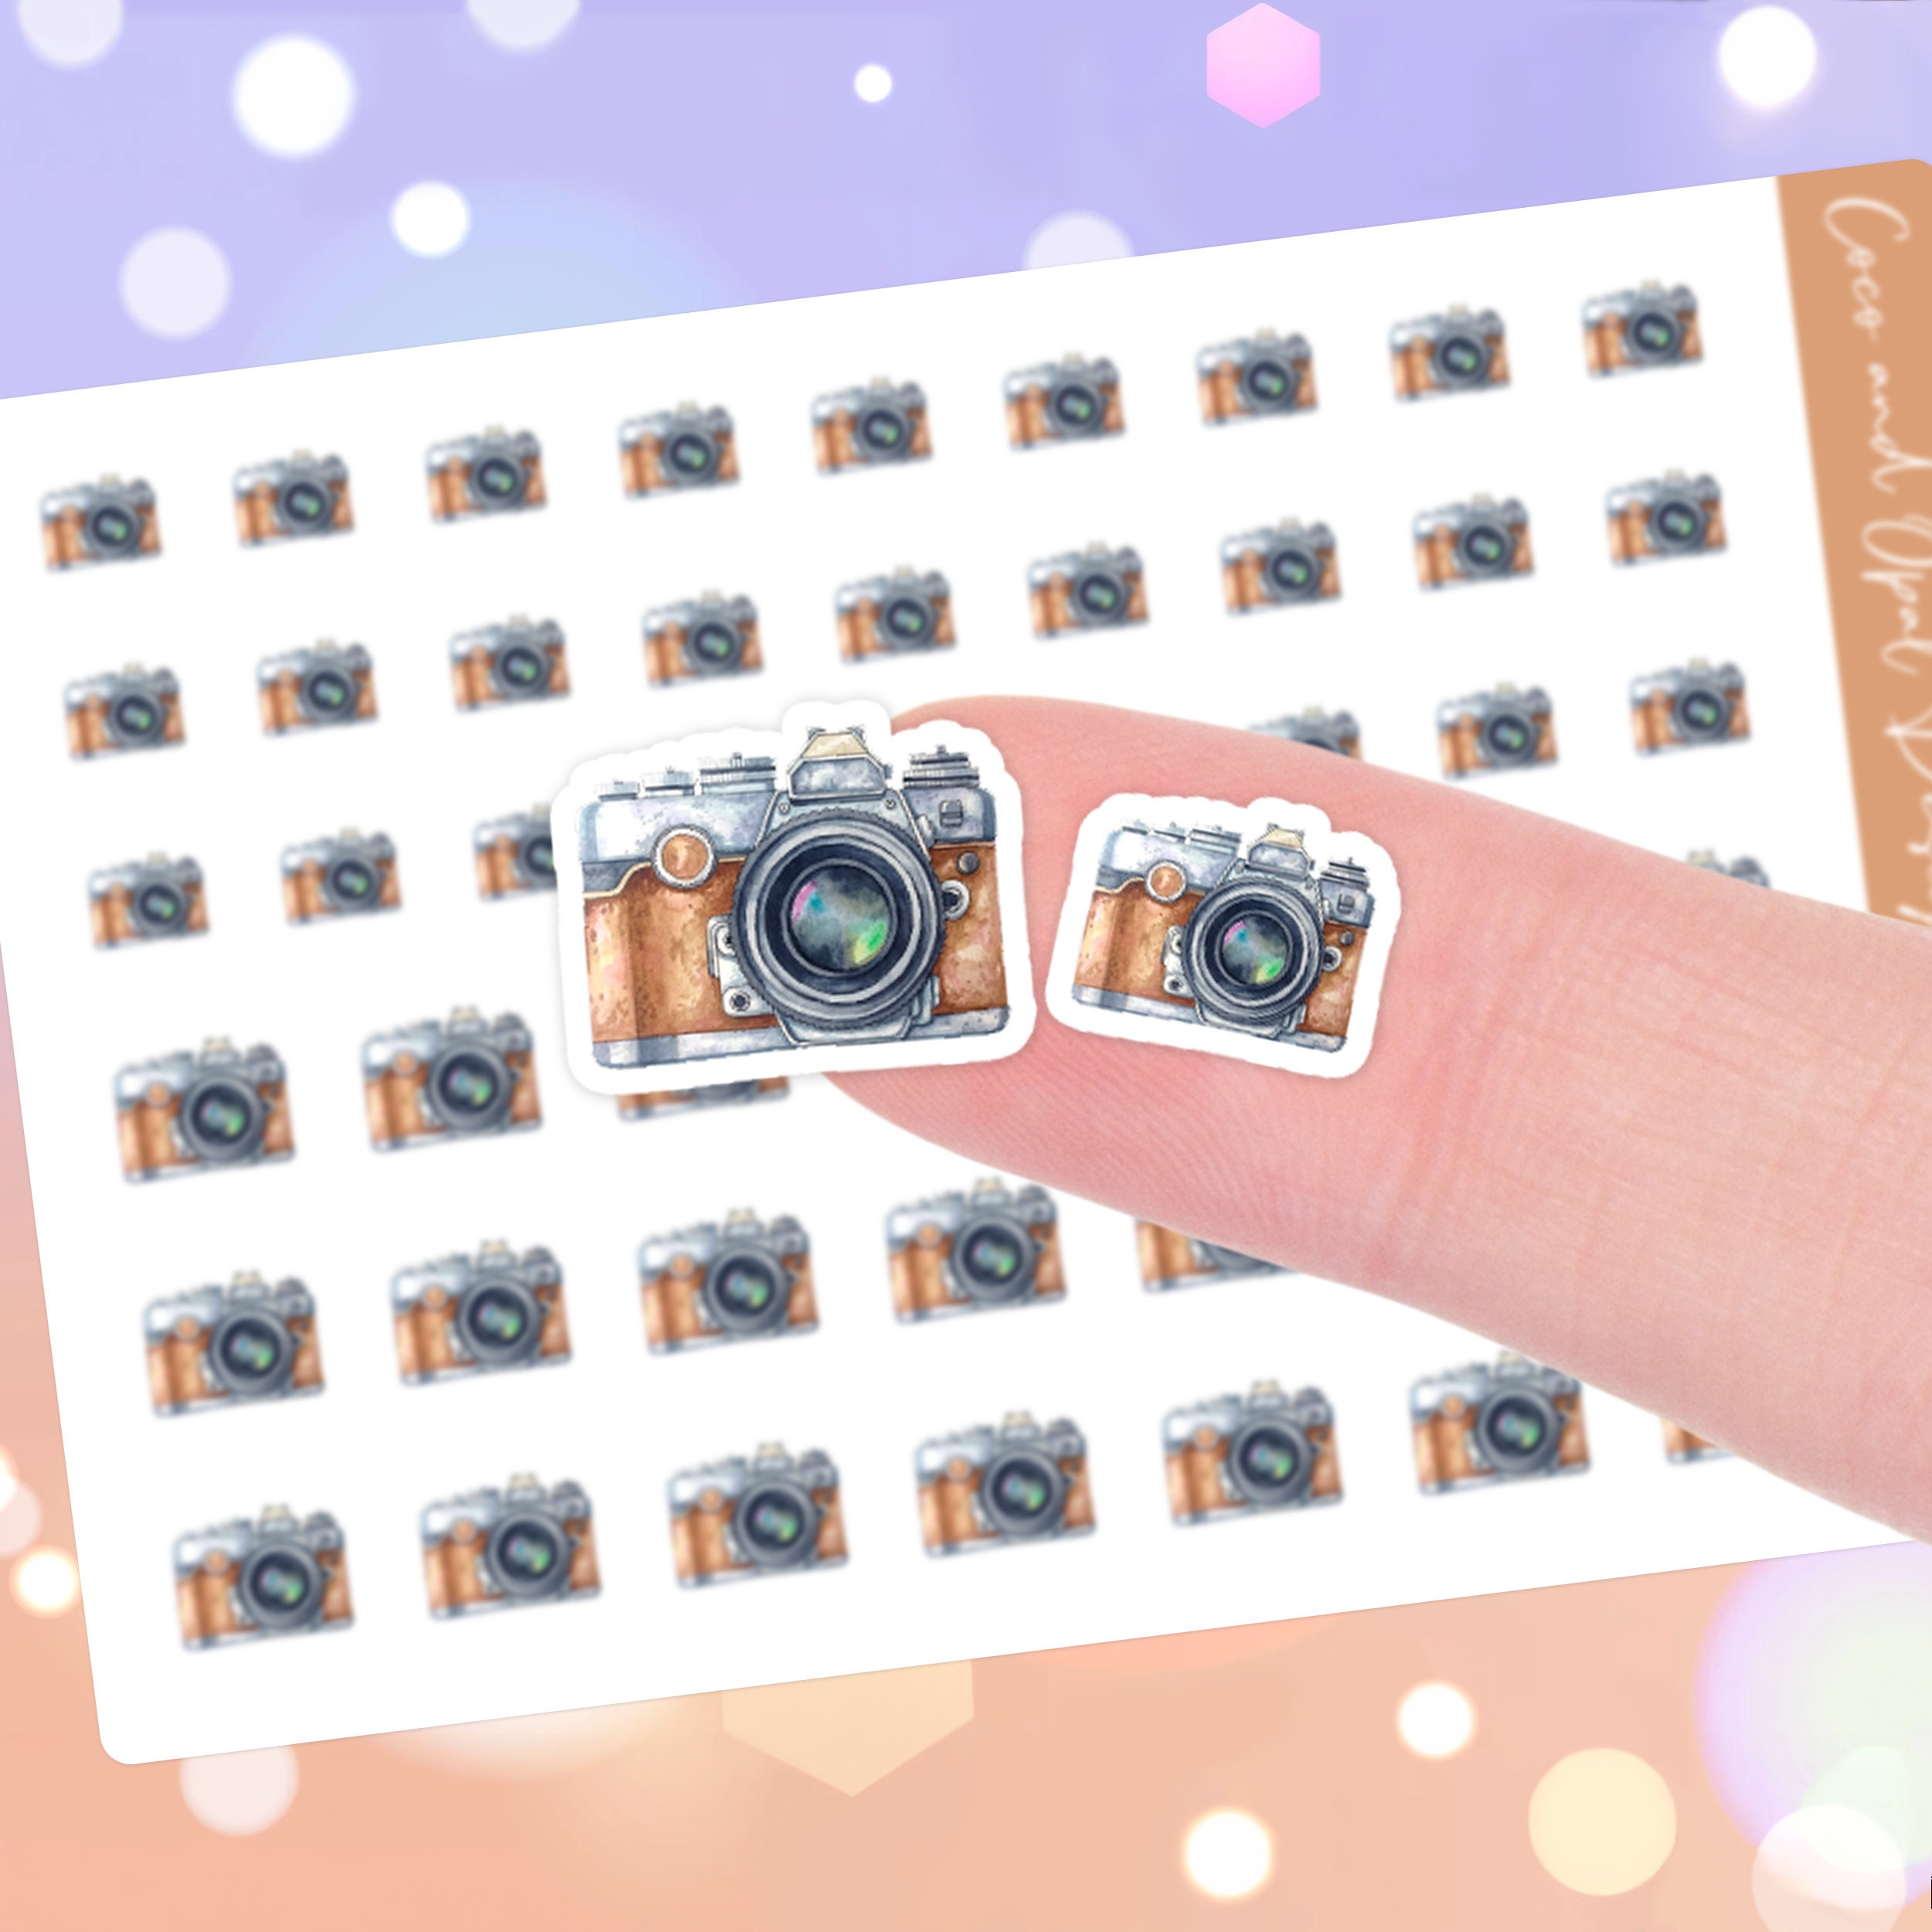 Wailozco 240 PC Cute Retro Camera Business Stickers,Funny Small